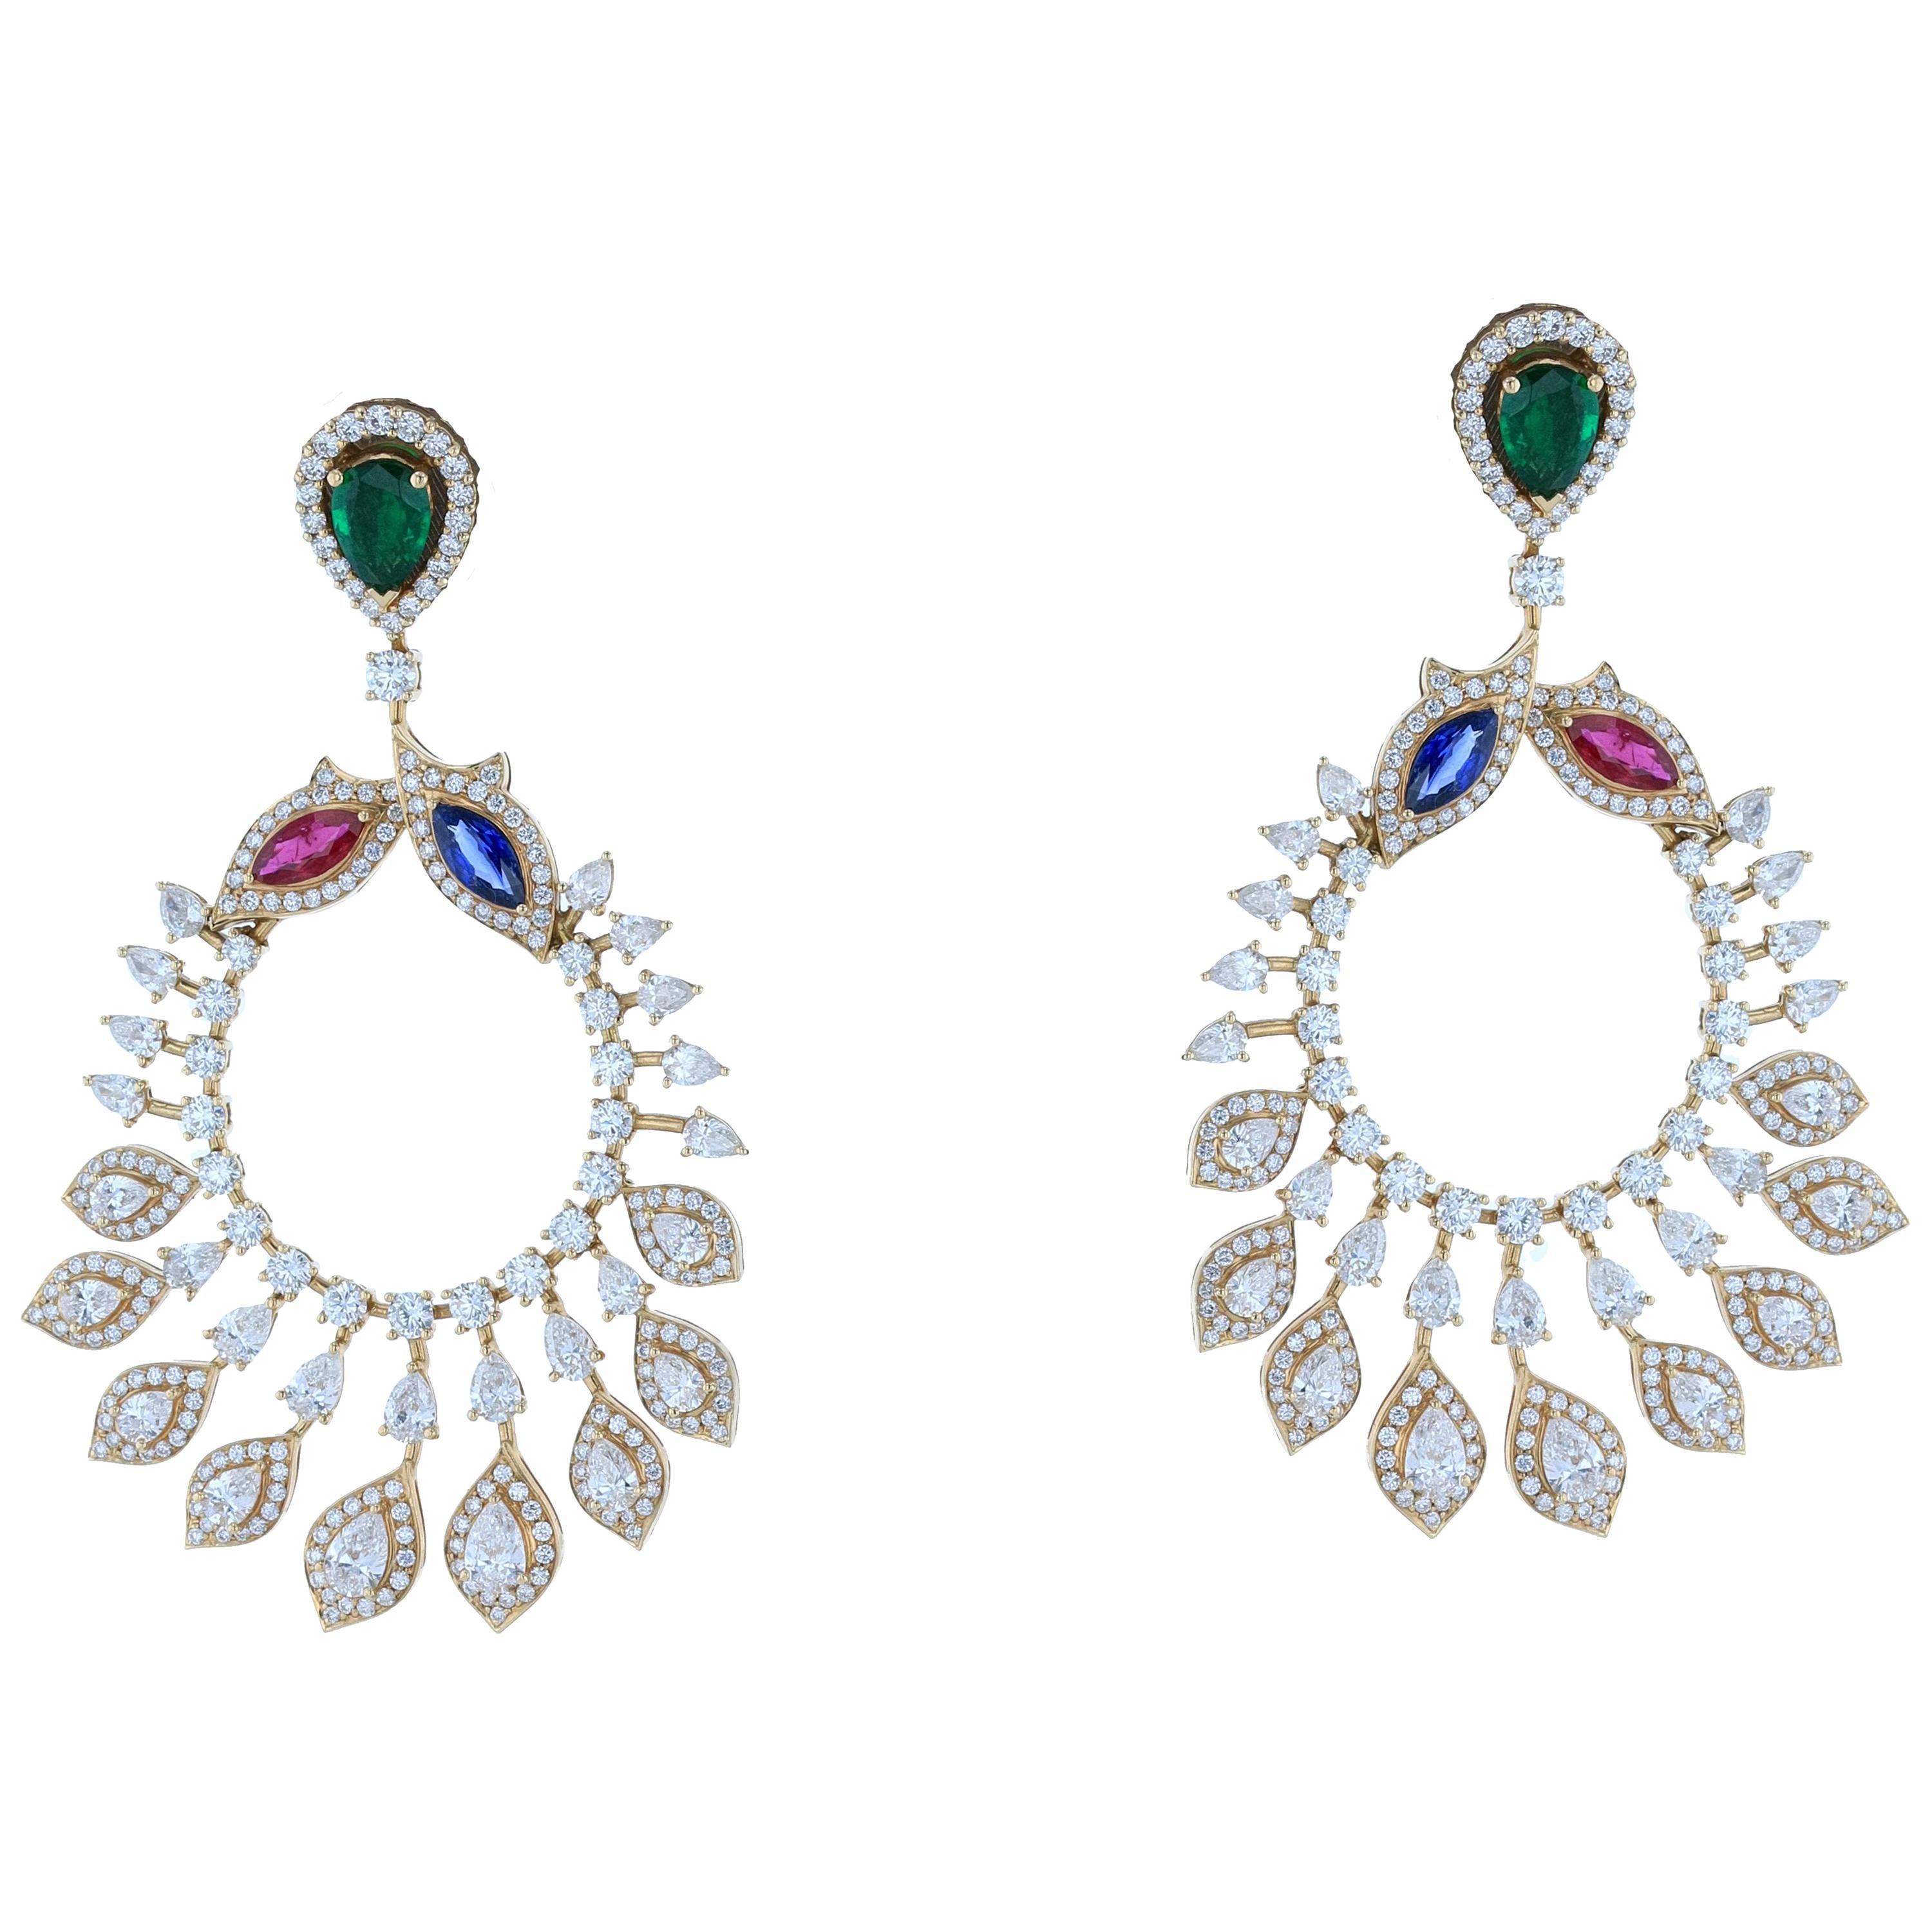 Amwaj Jewelry Emerald, Sapphire and Ruby Chandelier Earrings in 18 Karat Gold For Sale